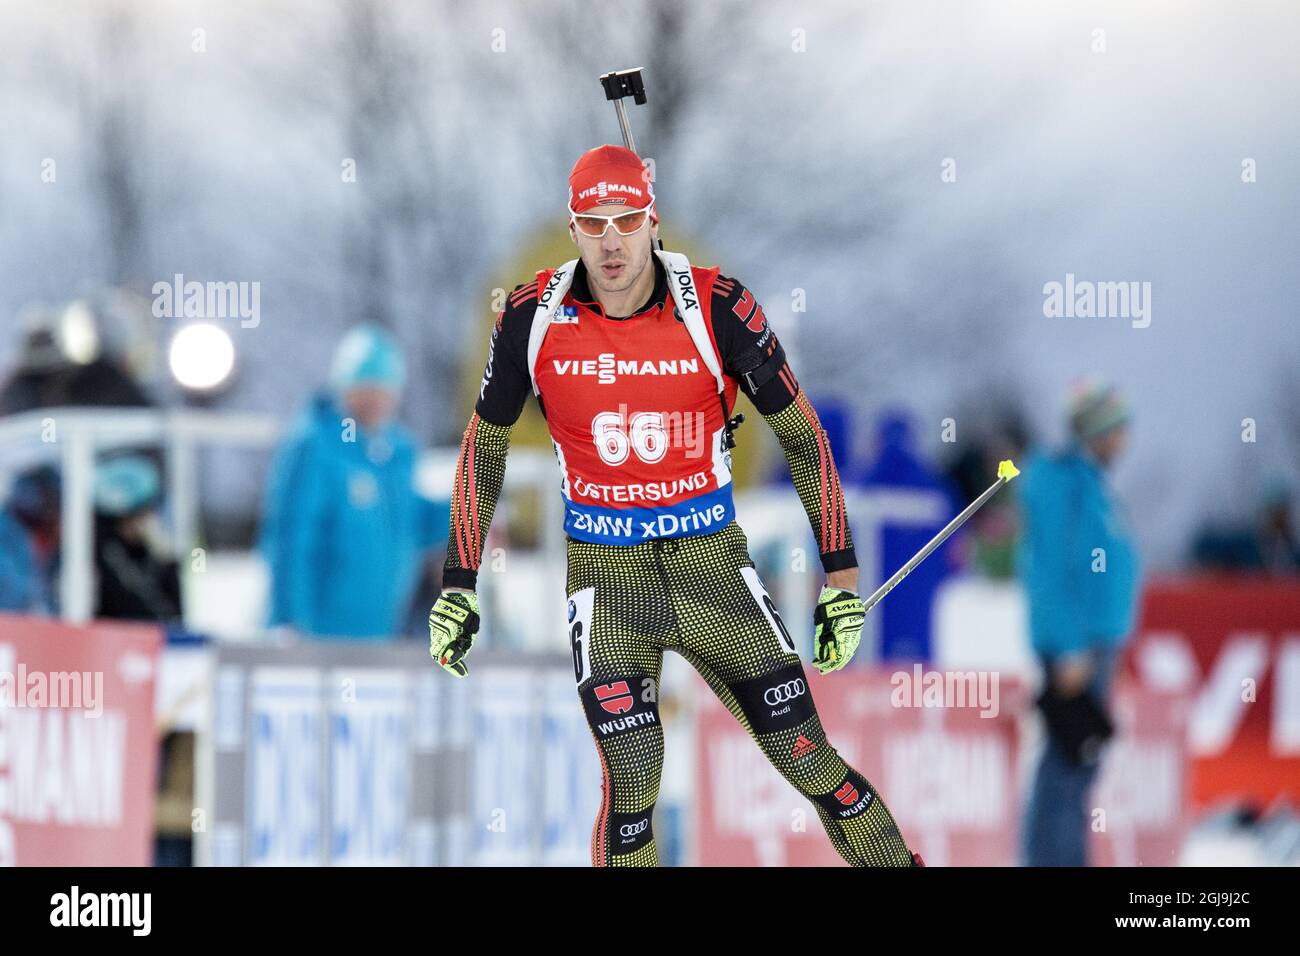 Arnd Pheiffer di Germania durante la gara di sprint maschile di 10 km alla IBU Biathlon World Cup di Ostersund, Svezia, il 5 dicembre 2015. Fourcade ha vinto la gara. Foto: Christine Olsson / TT / code 10430 Foto Stock